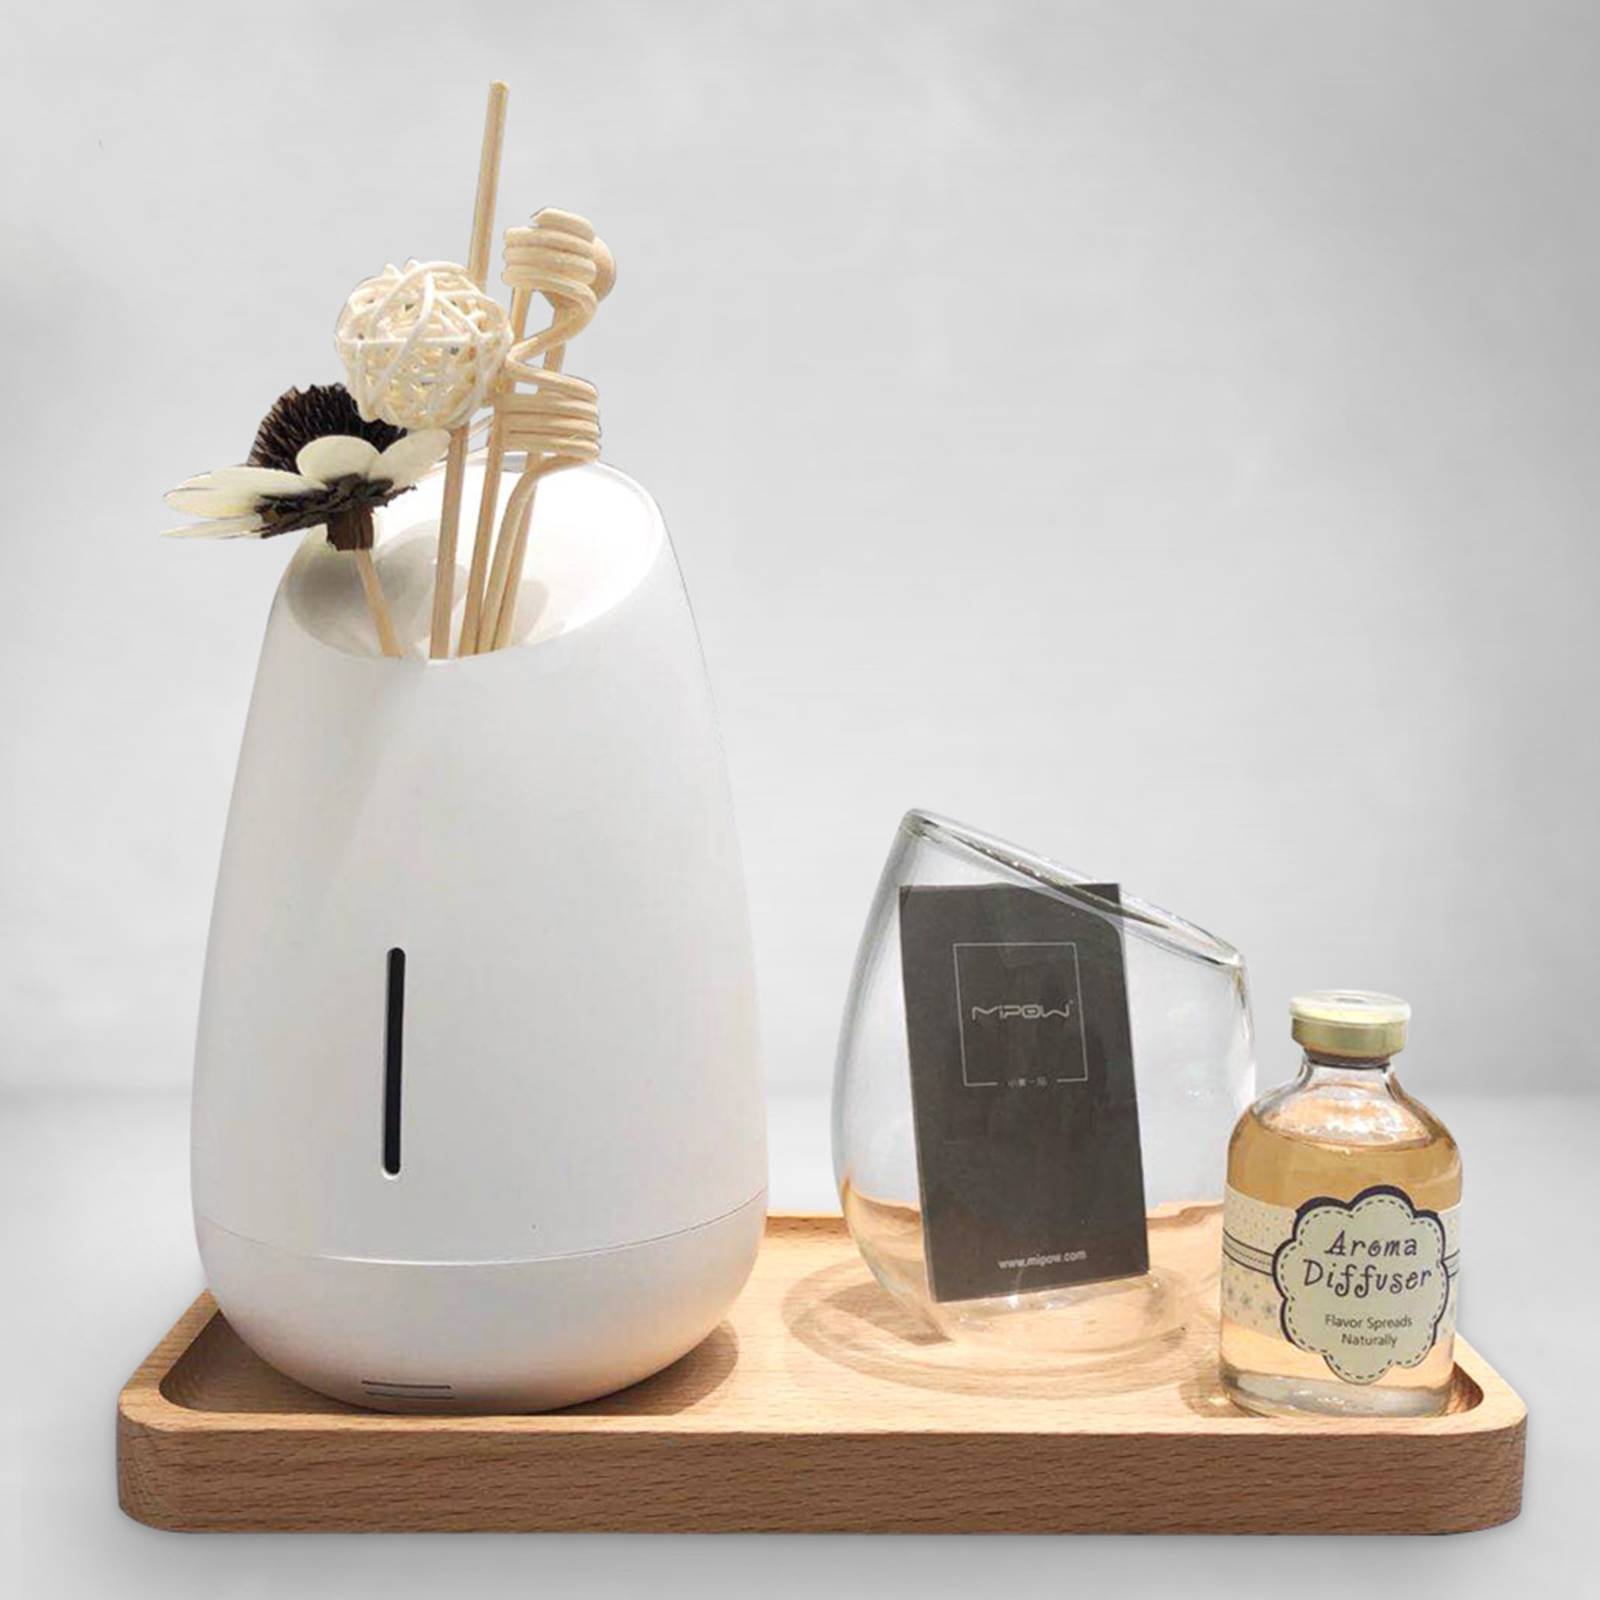 MiPow Vaso diffusore aromi con musica, bianco